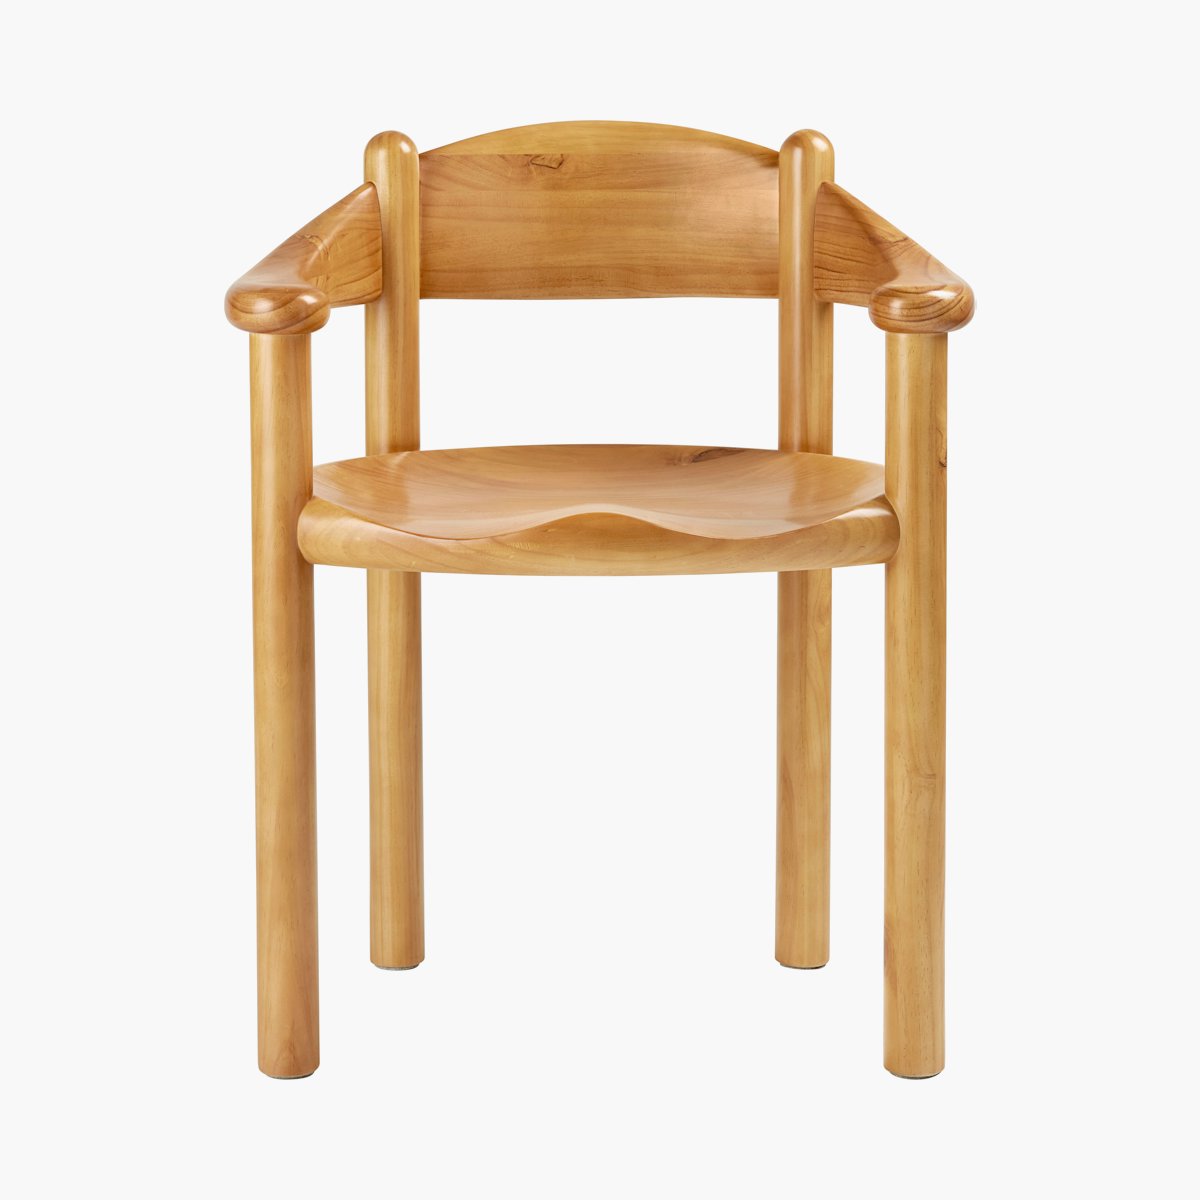 Daumiller Chair